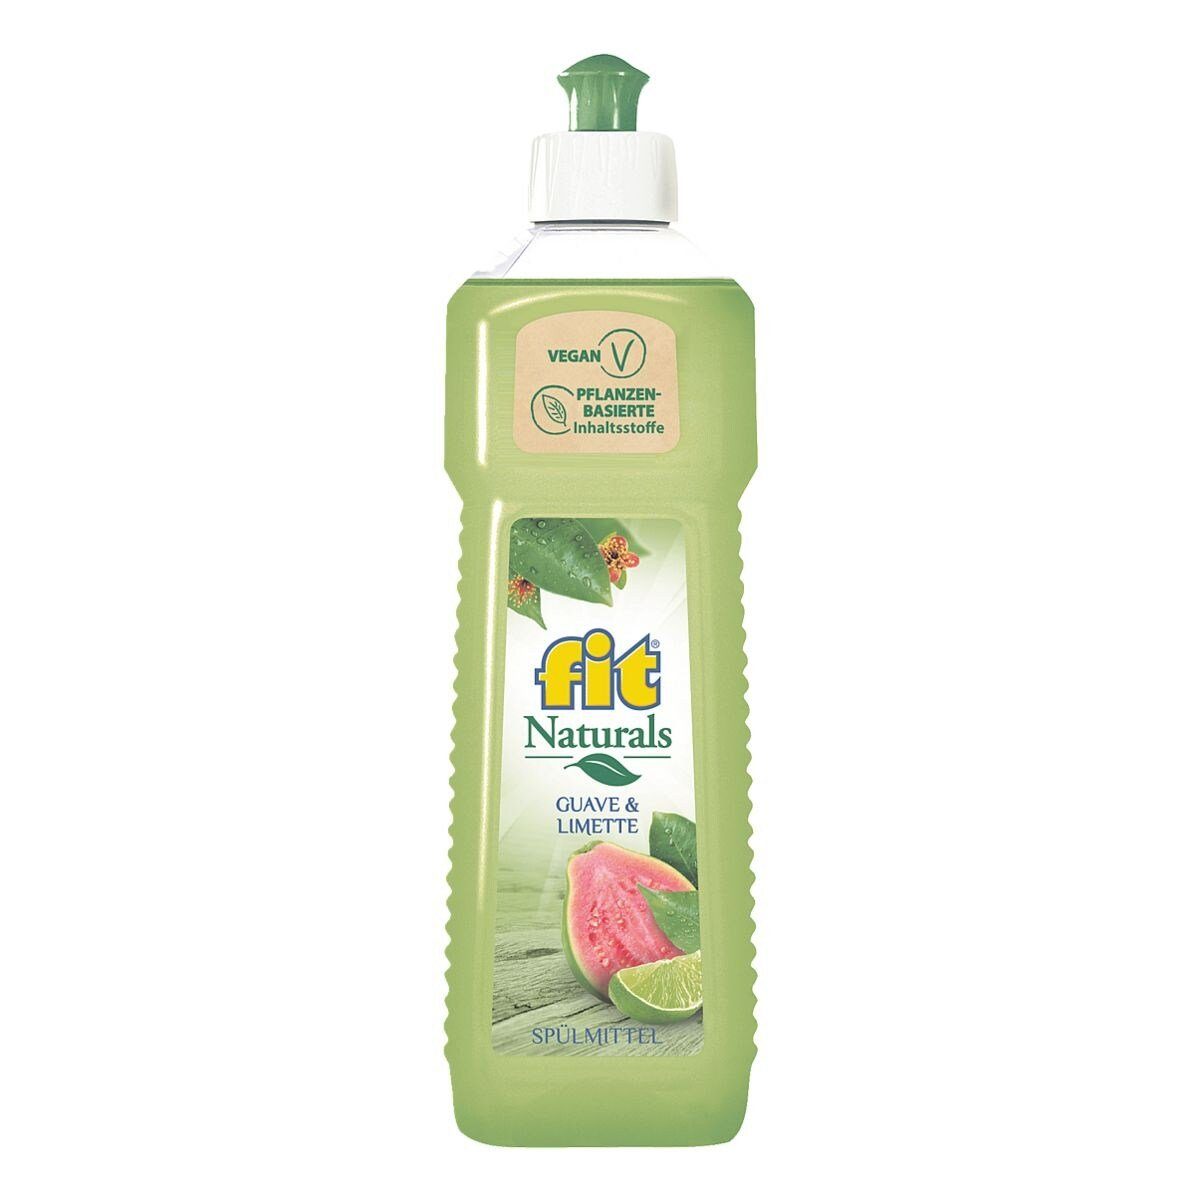 FIT GRUENEKRAFT Naturals Guave & Limette Geschirrspülmittel (500 ml, pH-neutral, hautschonend, vegan) | Geschirrspülmittel